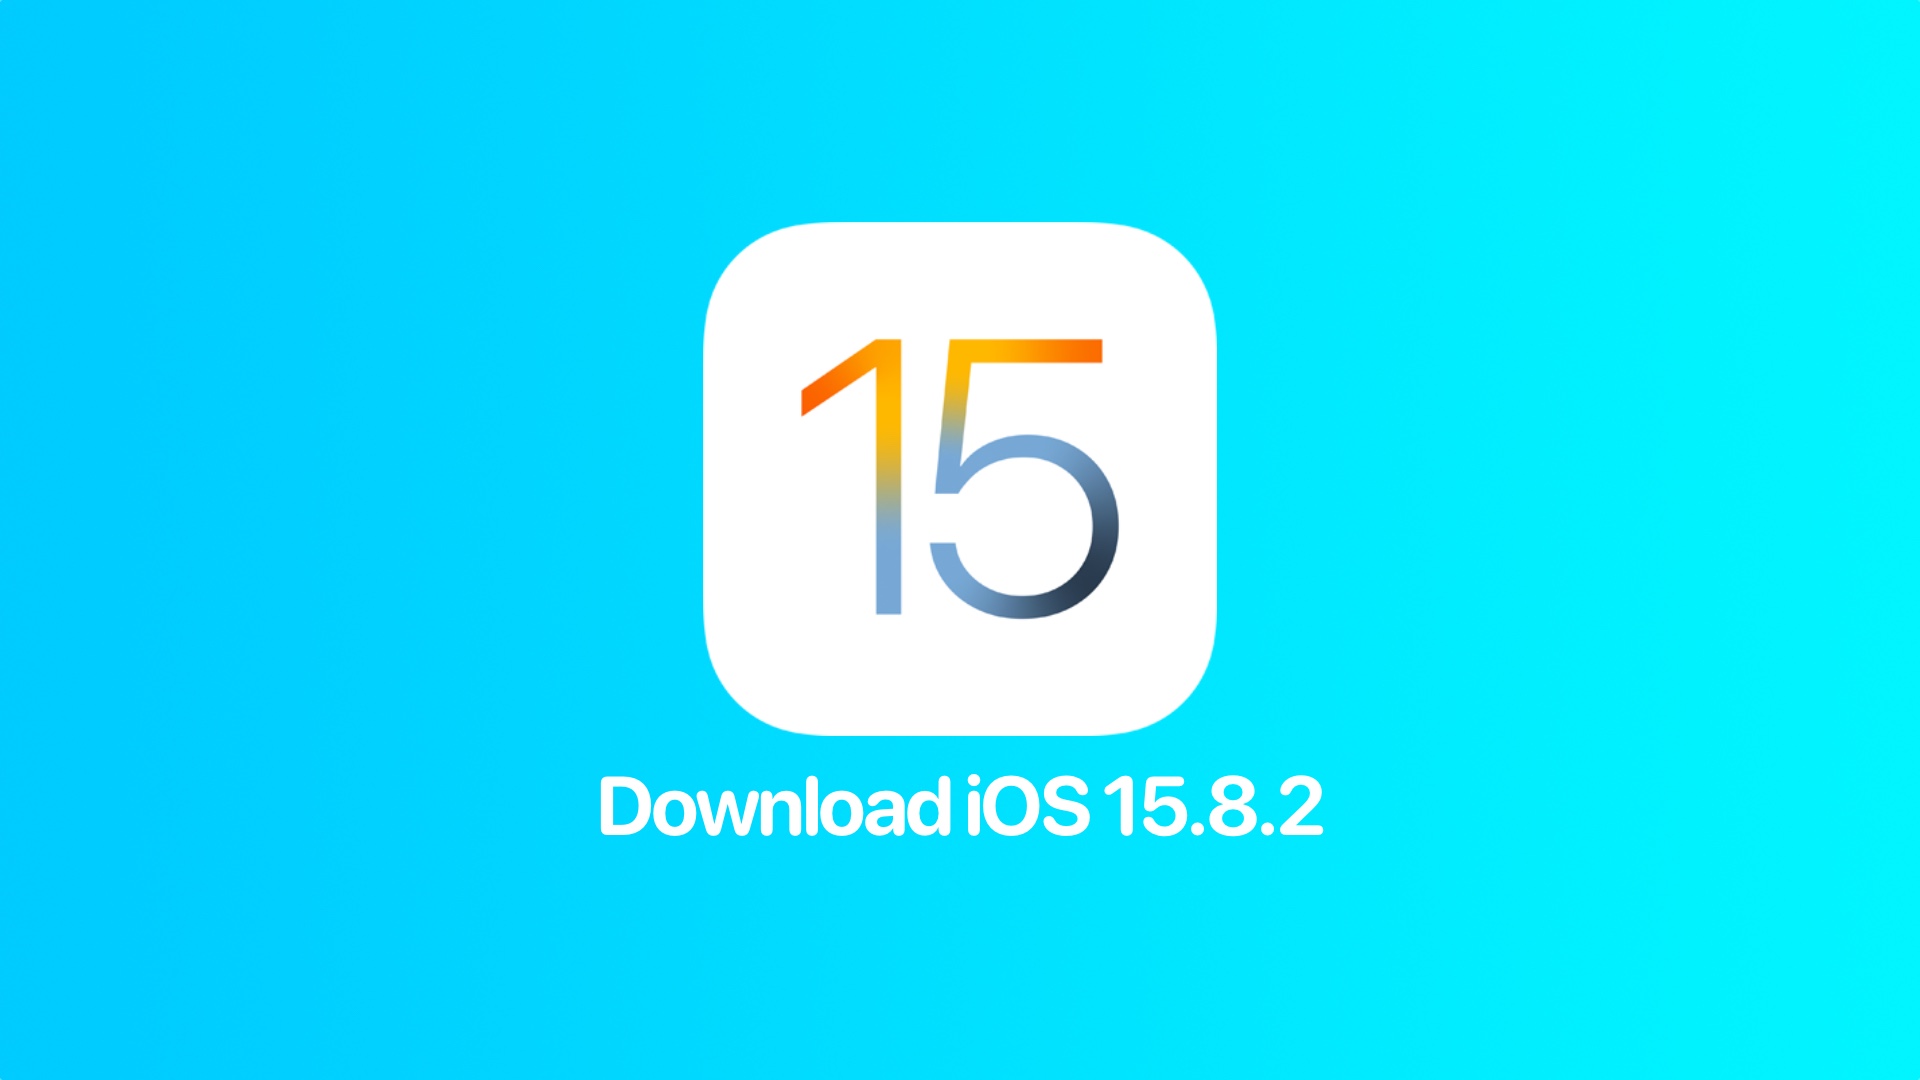 Download iOS 15.8.2 IPSW